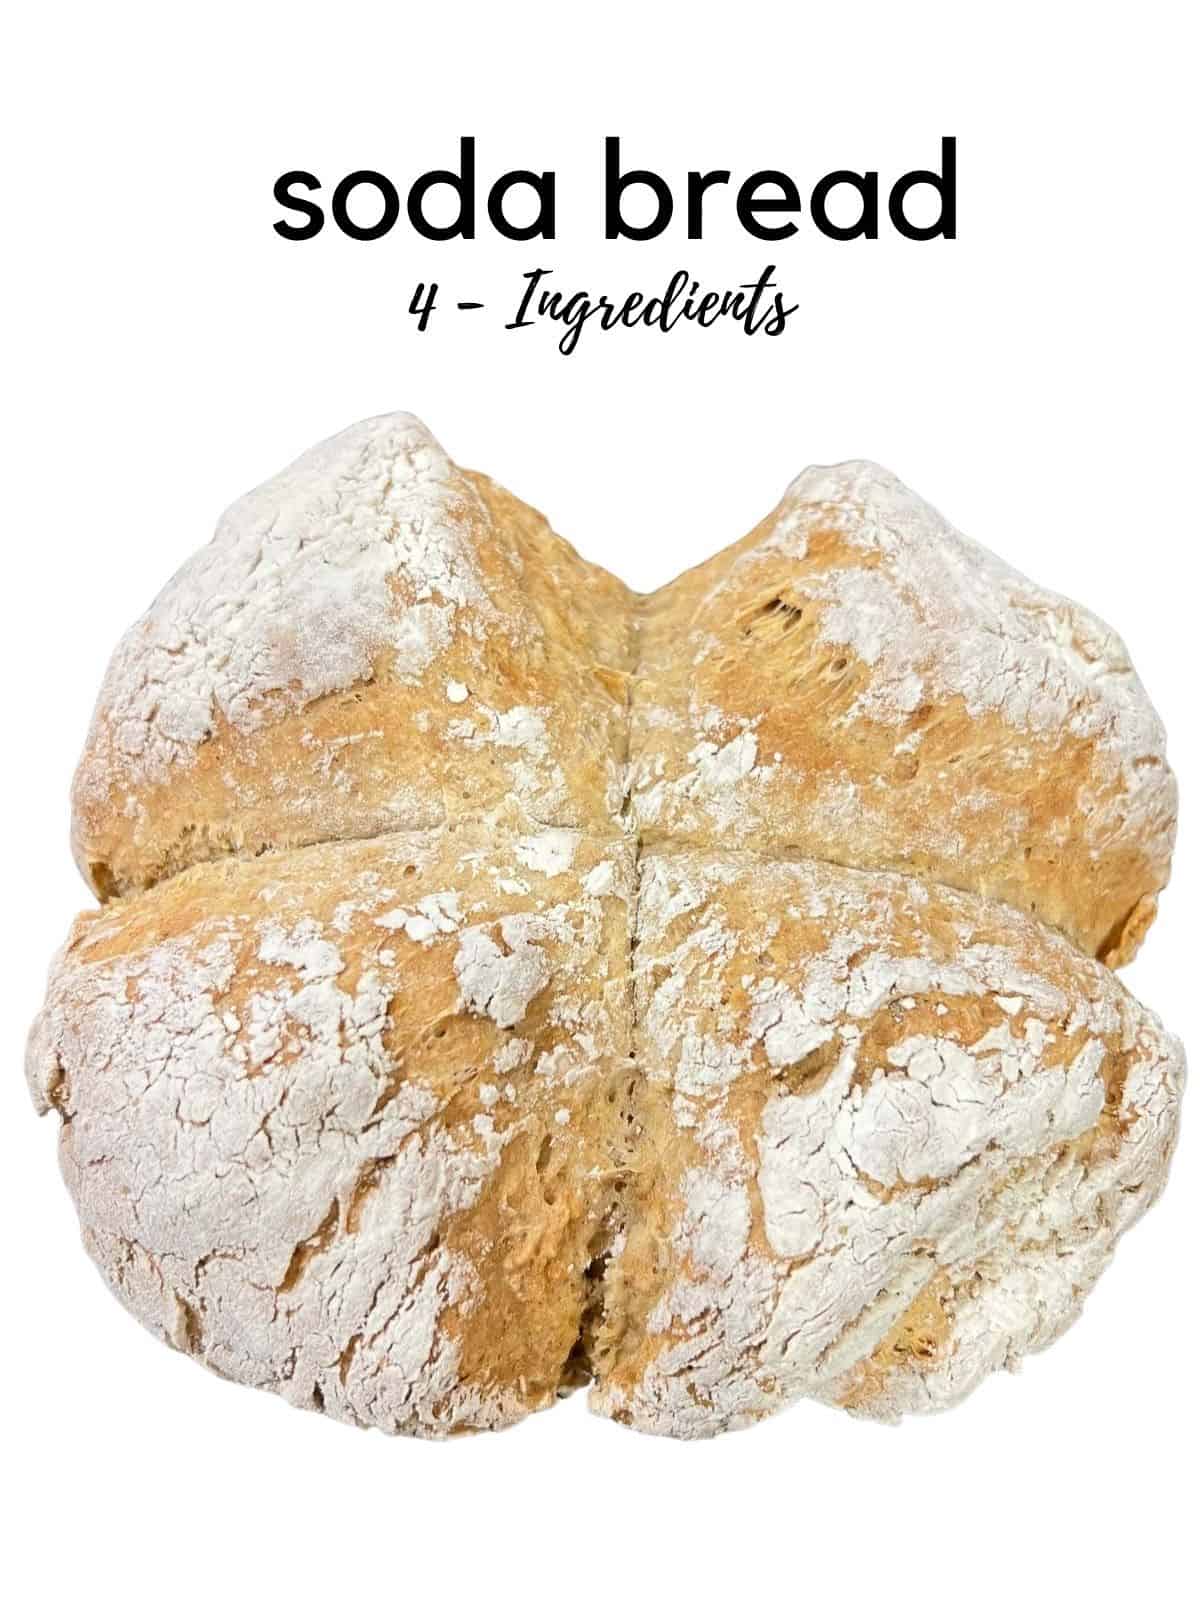 irish soda bread recipe